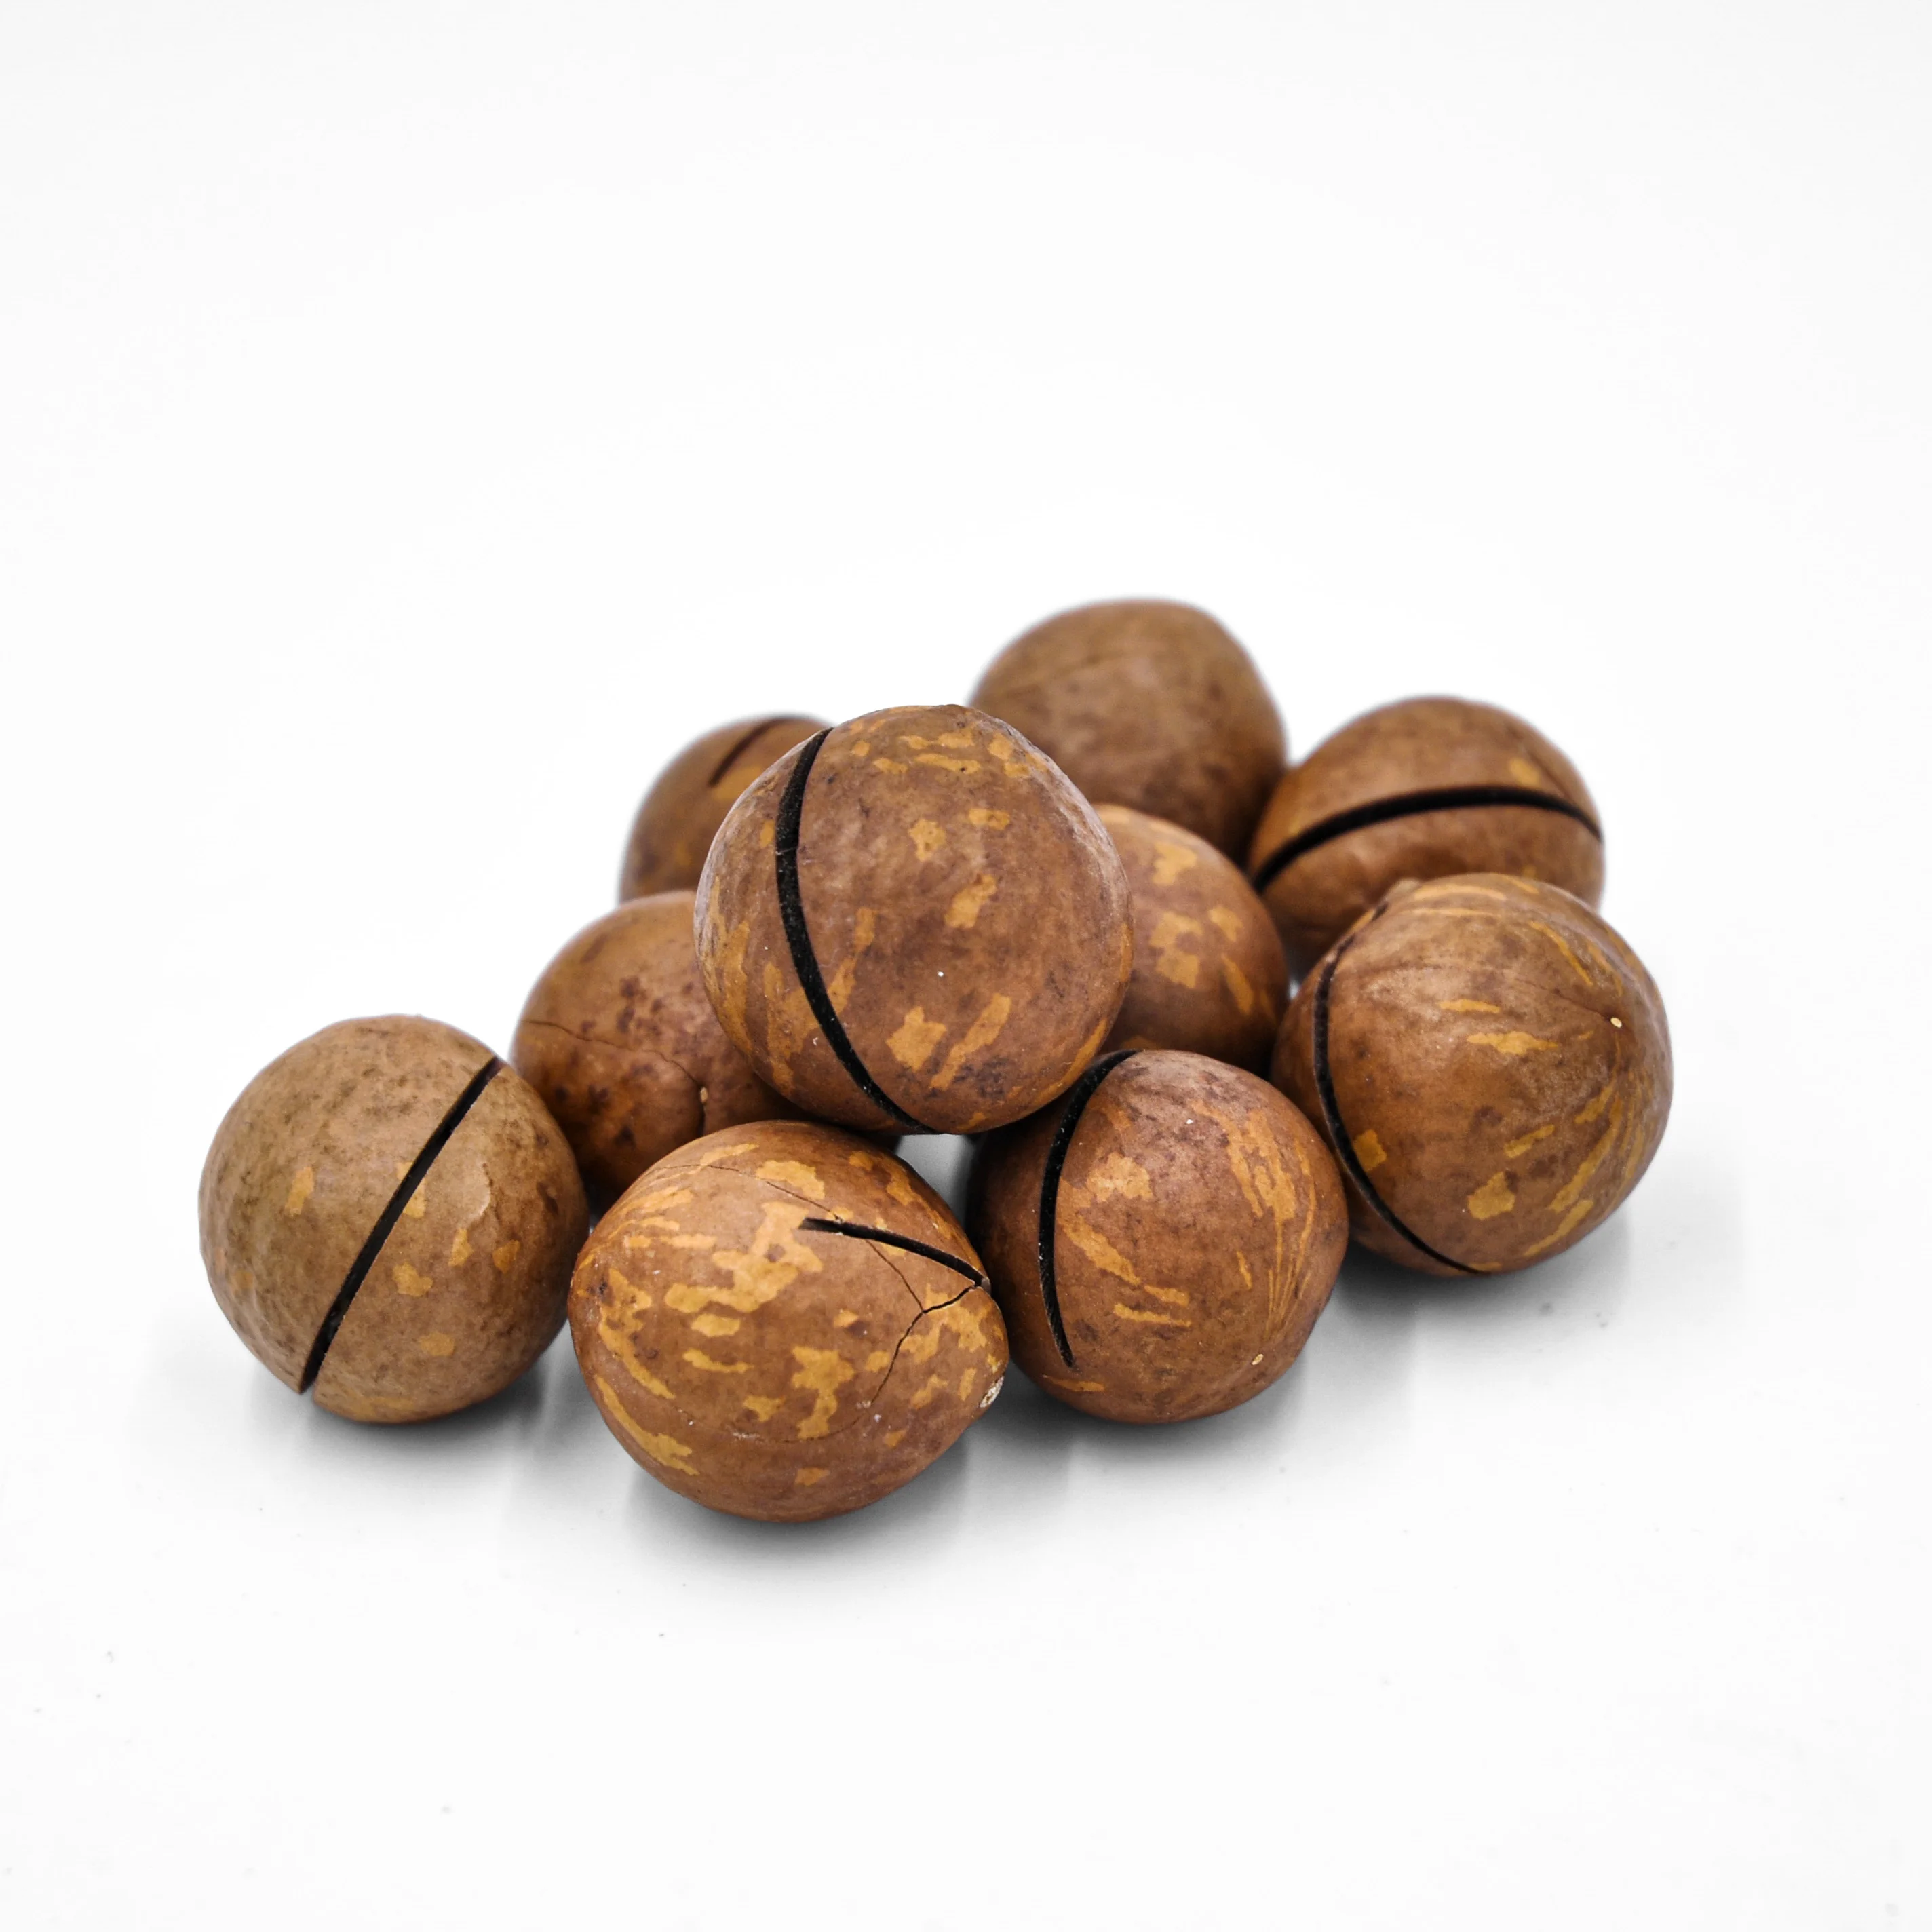 Wholesale Macadamia Nuts Factory Price Top grade Raw Macadamia Nuts (1600606480899)